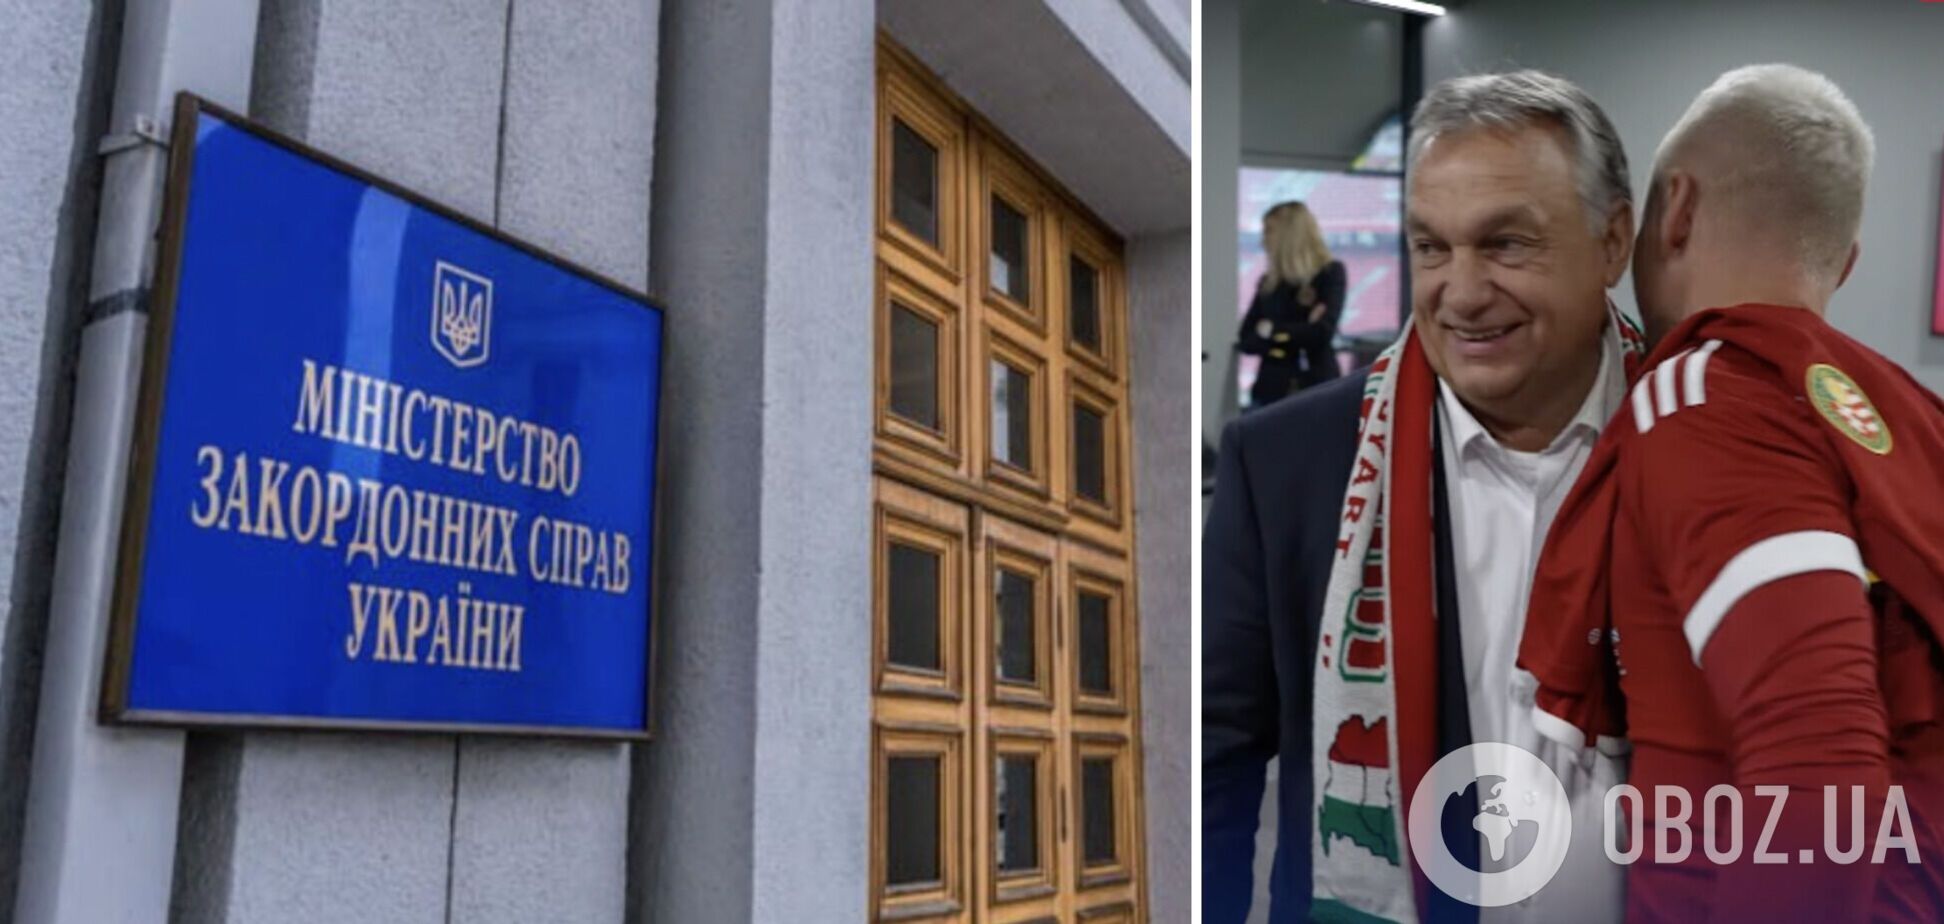 МЗС України вимагає вибачень від Орбана і викликає посла Угорщини через скандал із зазіханням на територію інших країн